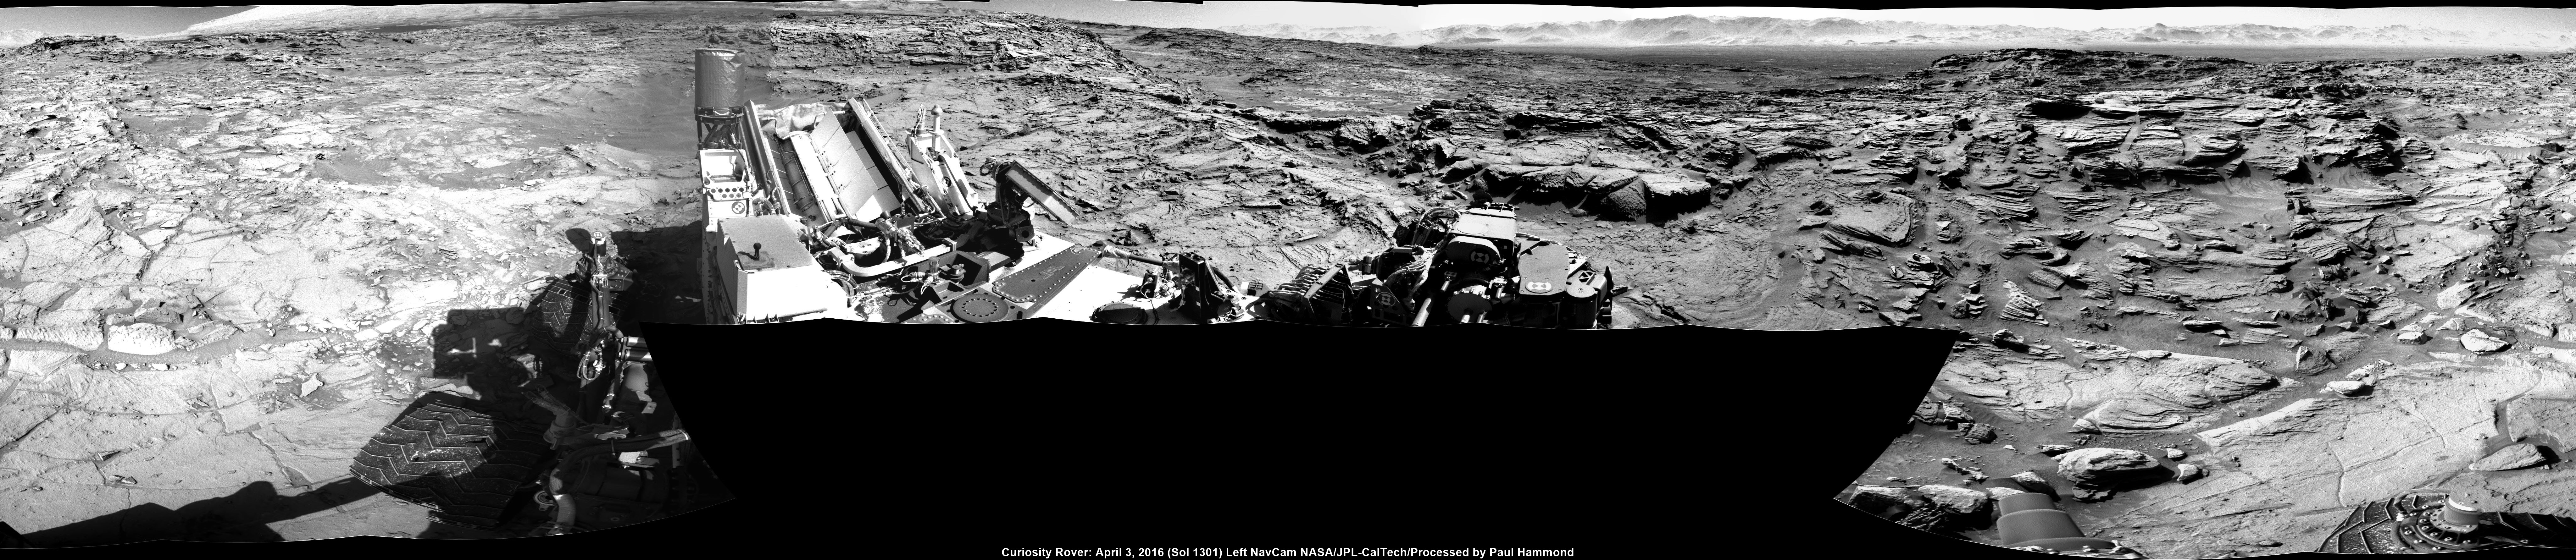 MARS: CURIOSITY u krateru  GALE  - Page 37 26133923212_7f848216cb_o